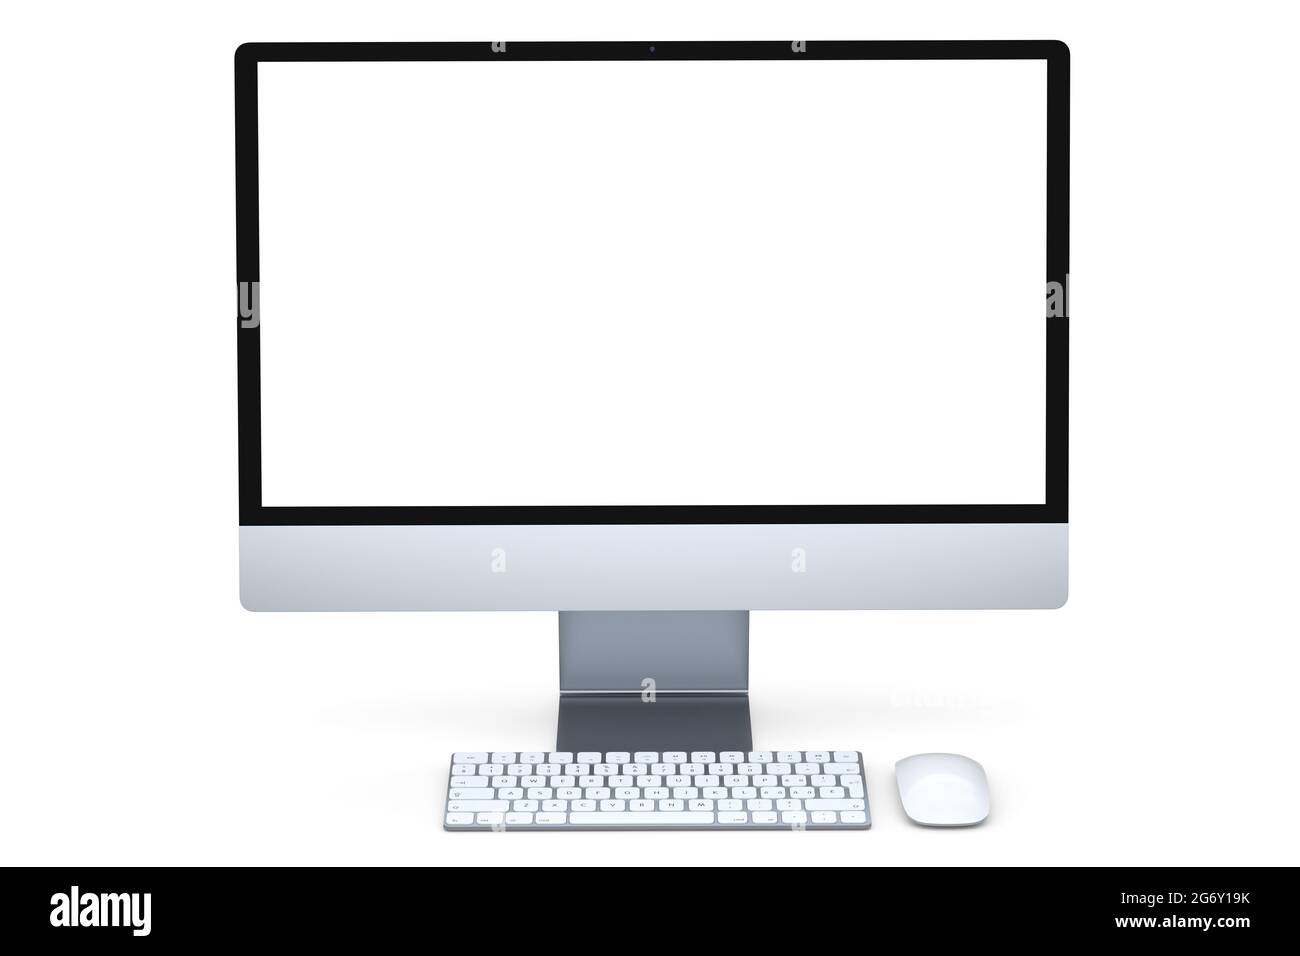 Pantalla de ordenador gris realista con teclado y ratón aislados sobre fondo blanco. 3D Representación de monitor plateado para el espacio de trabajo del estudio doméstico Foto de stock